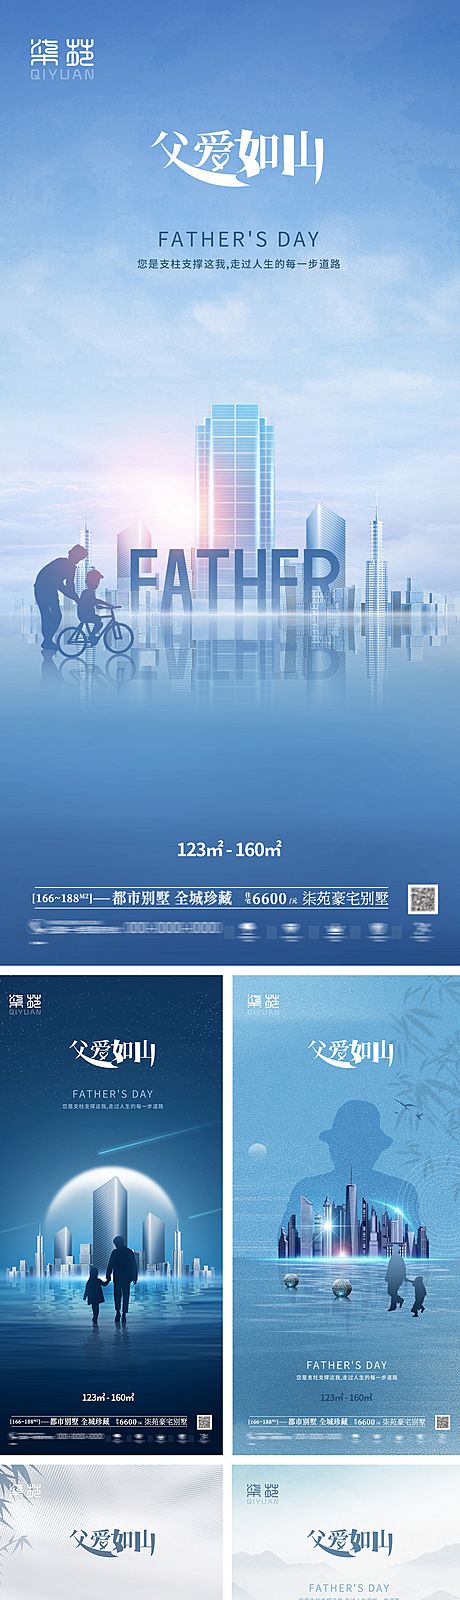 仙图网-父亲节系列海报